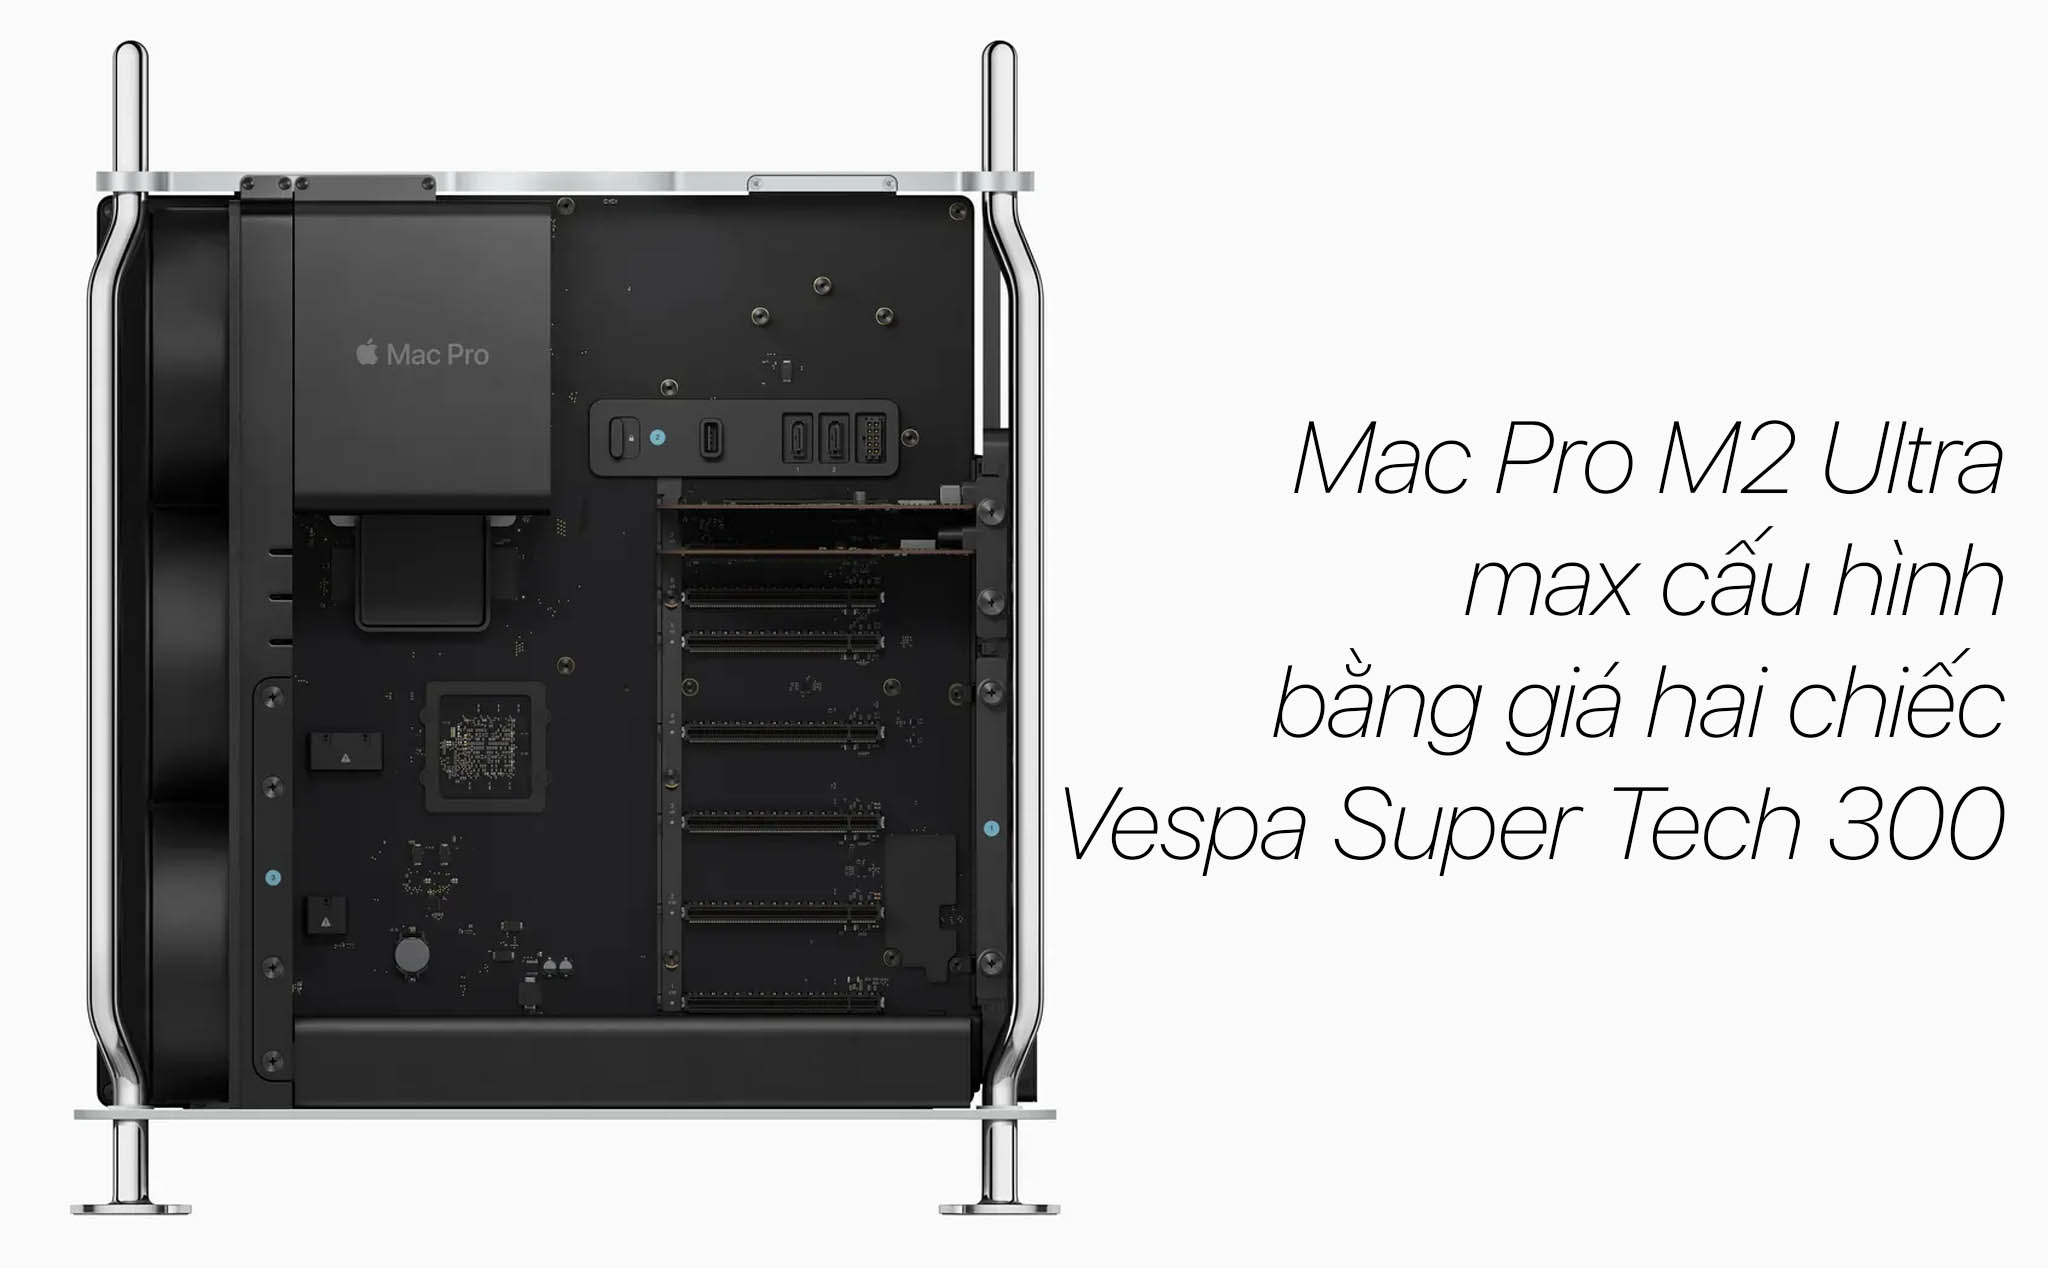 Mac Pro M2 Ultra max cấu hình có giá 326.516.000 Đồng, rẻ gấp 4 lần so với Mac Pro Xeon full option